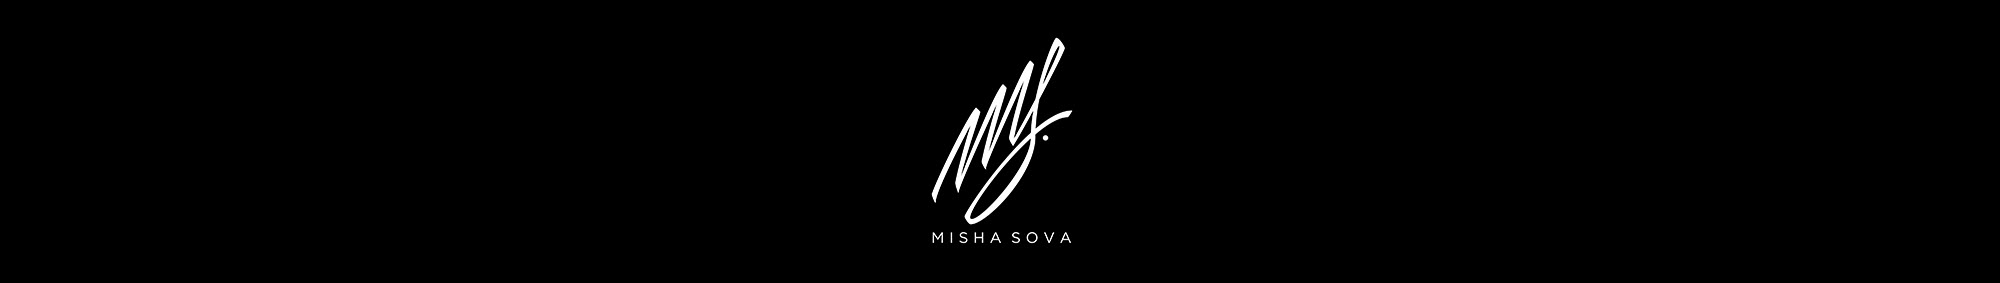 Misha Sova × Миша Соваs profilbanner